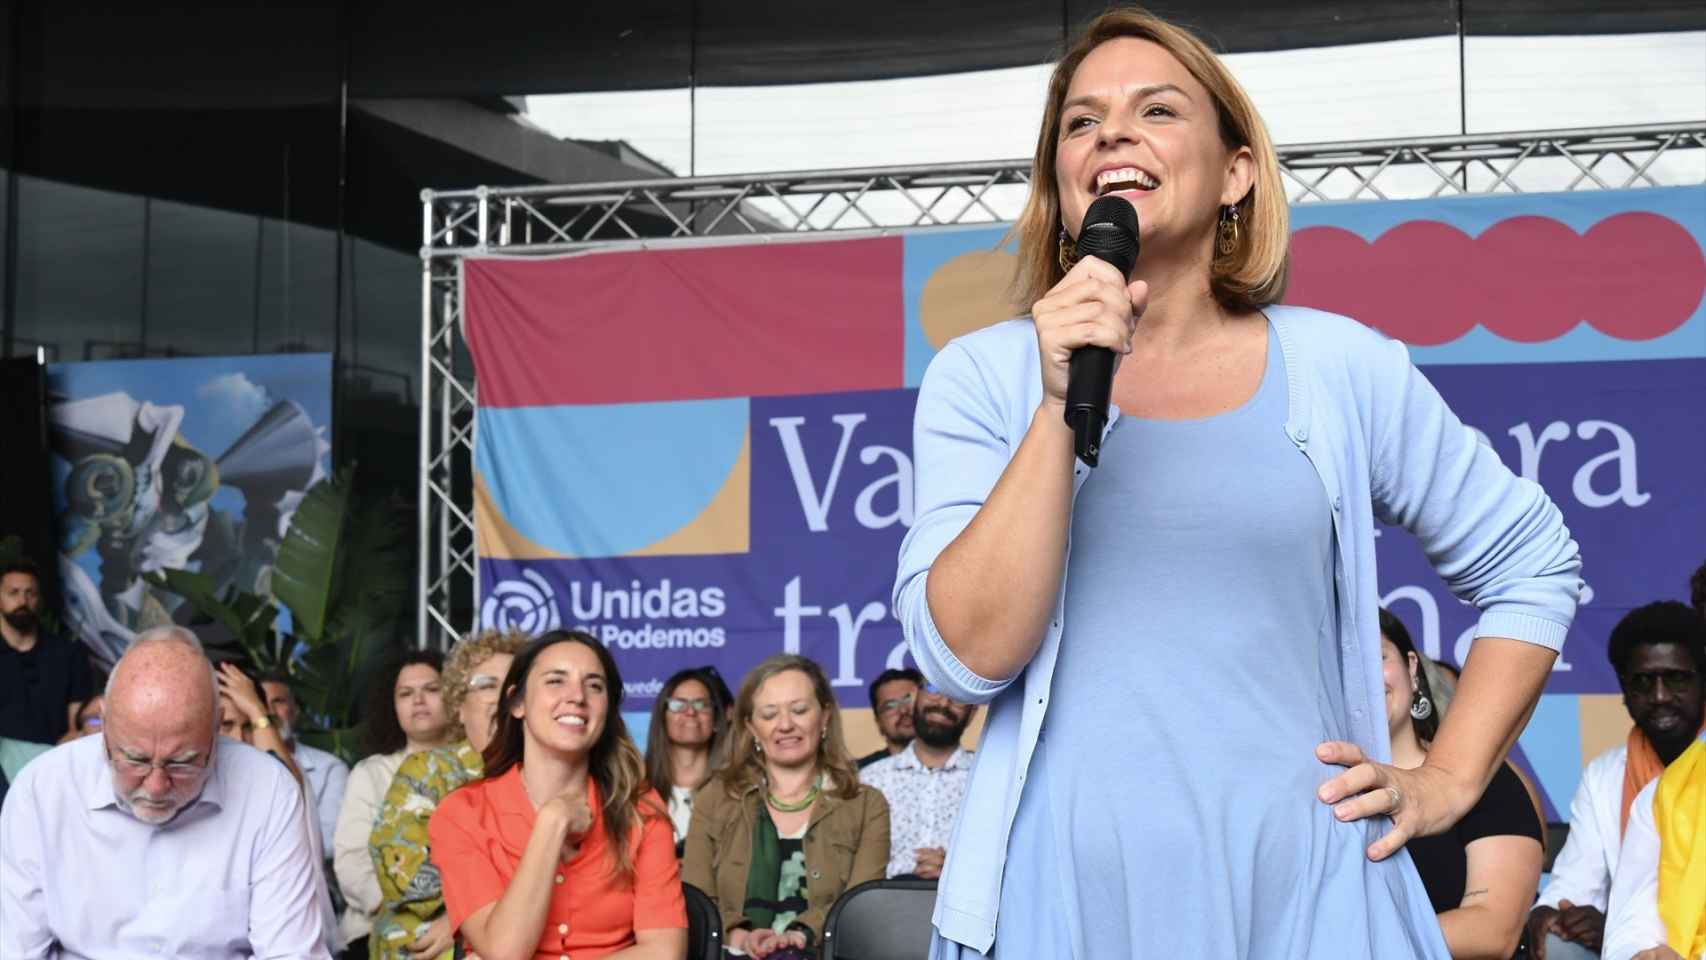 La consejera de Derechos Sociales del Gobierno de Canarias y candidata de Sumar, Noemí Santana.